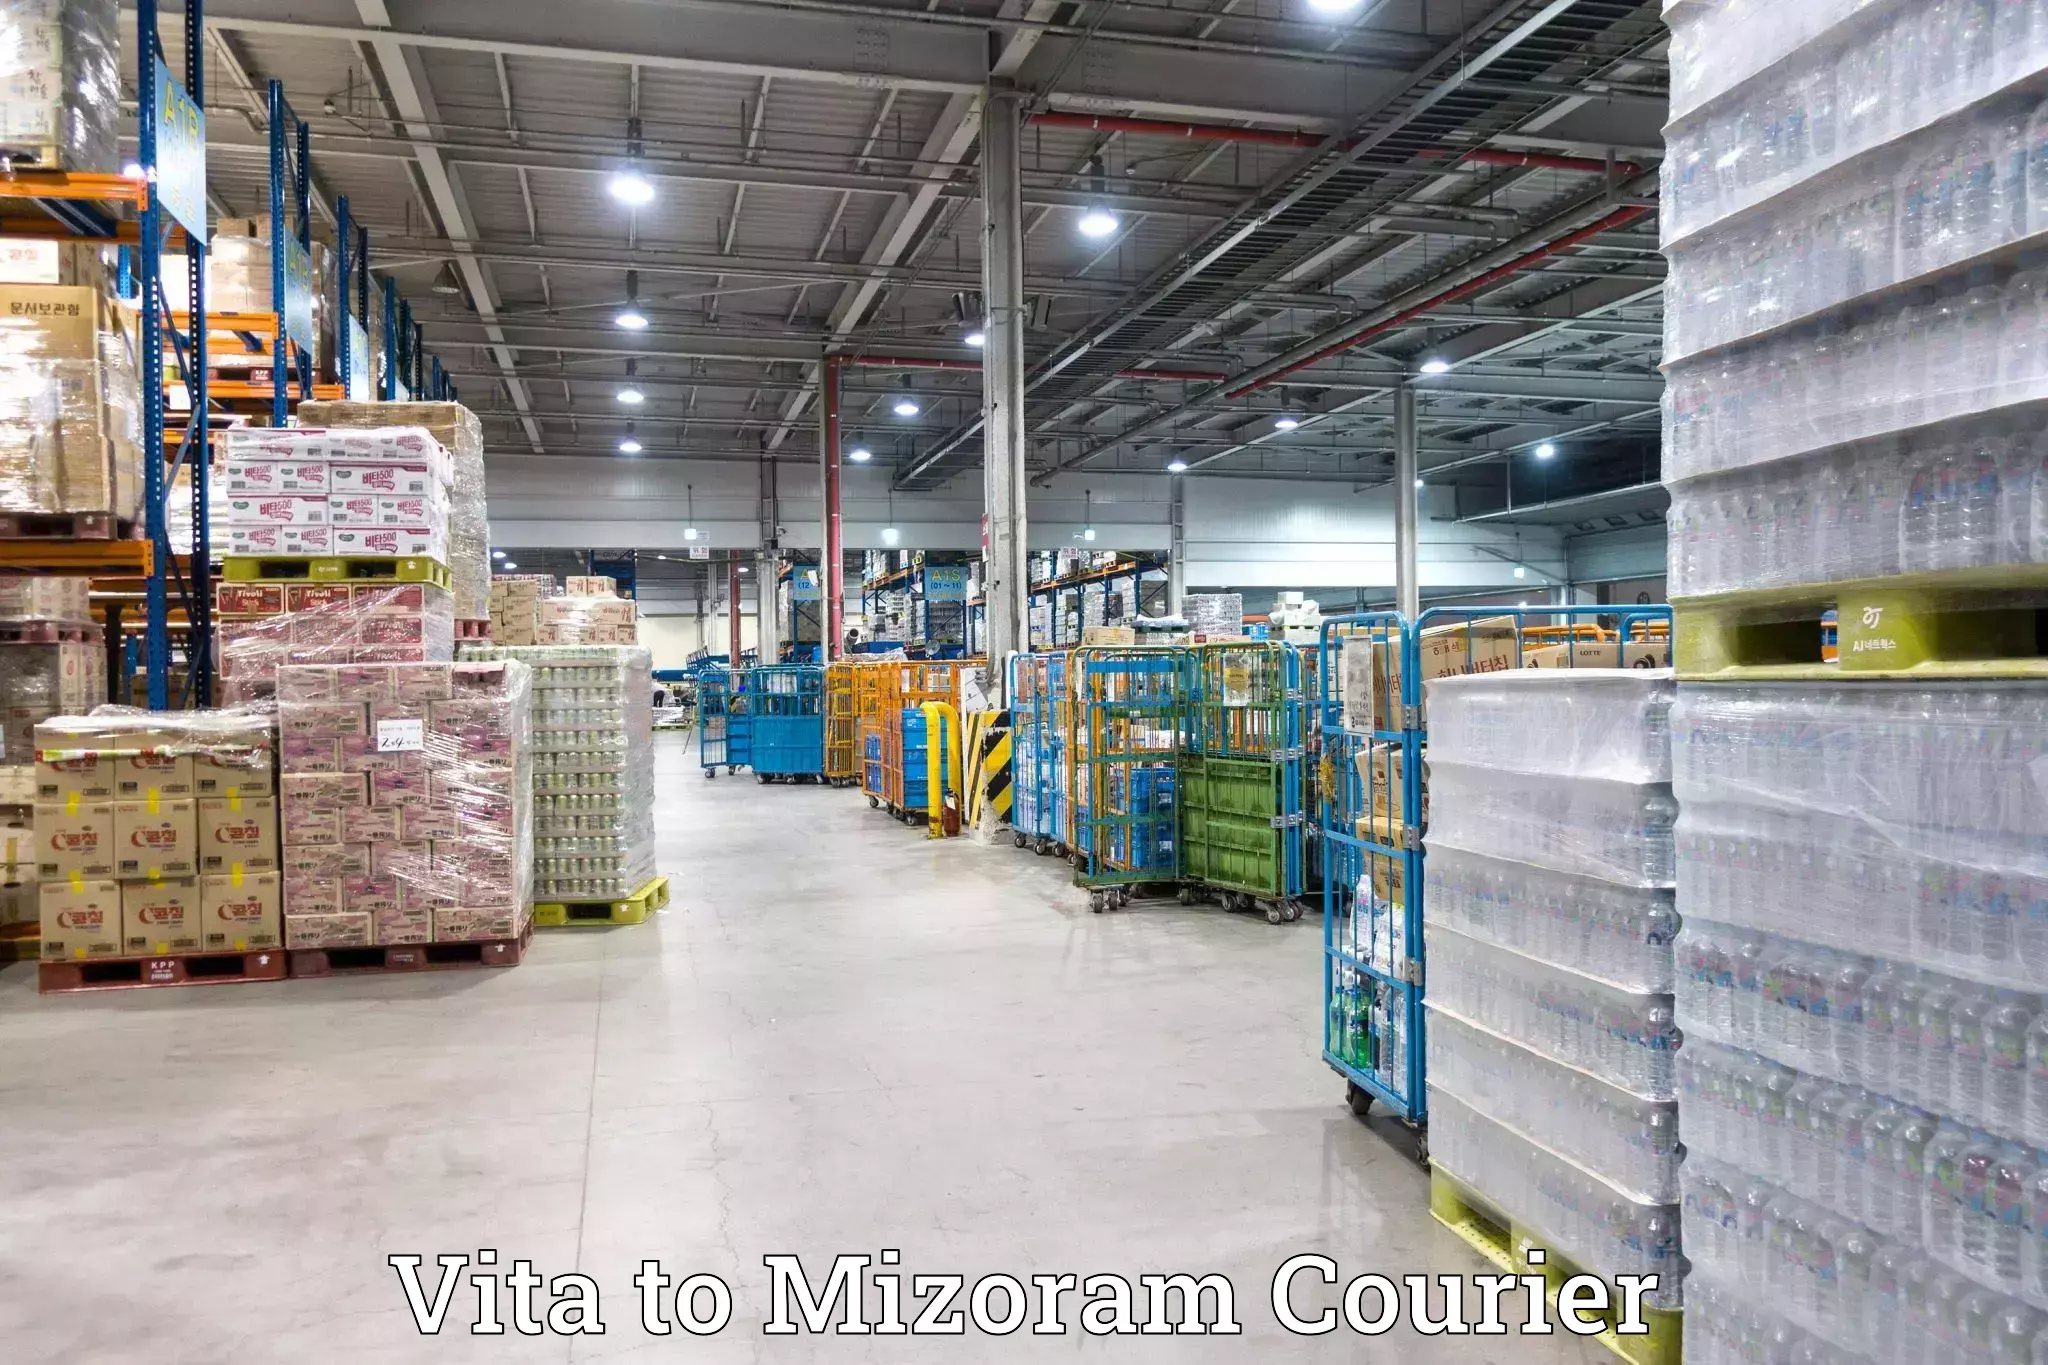 Furniture transport company Vita to Mizoram